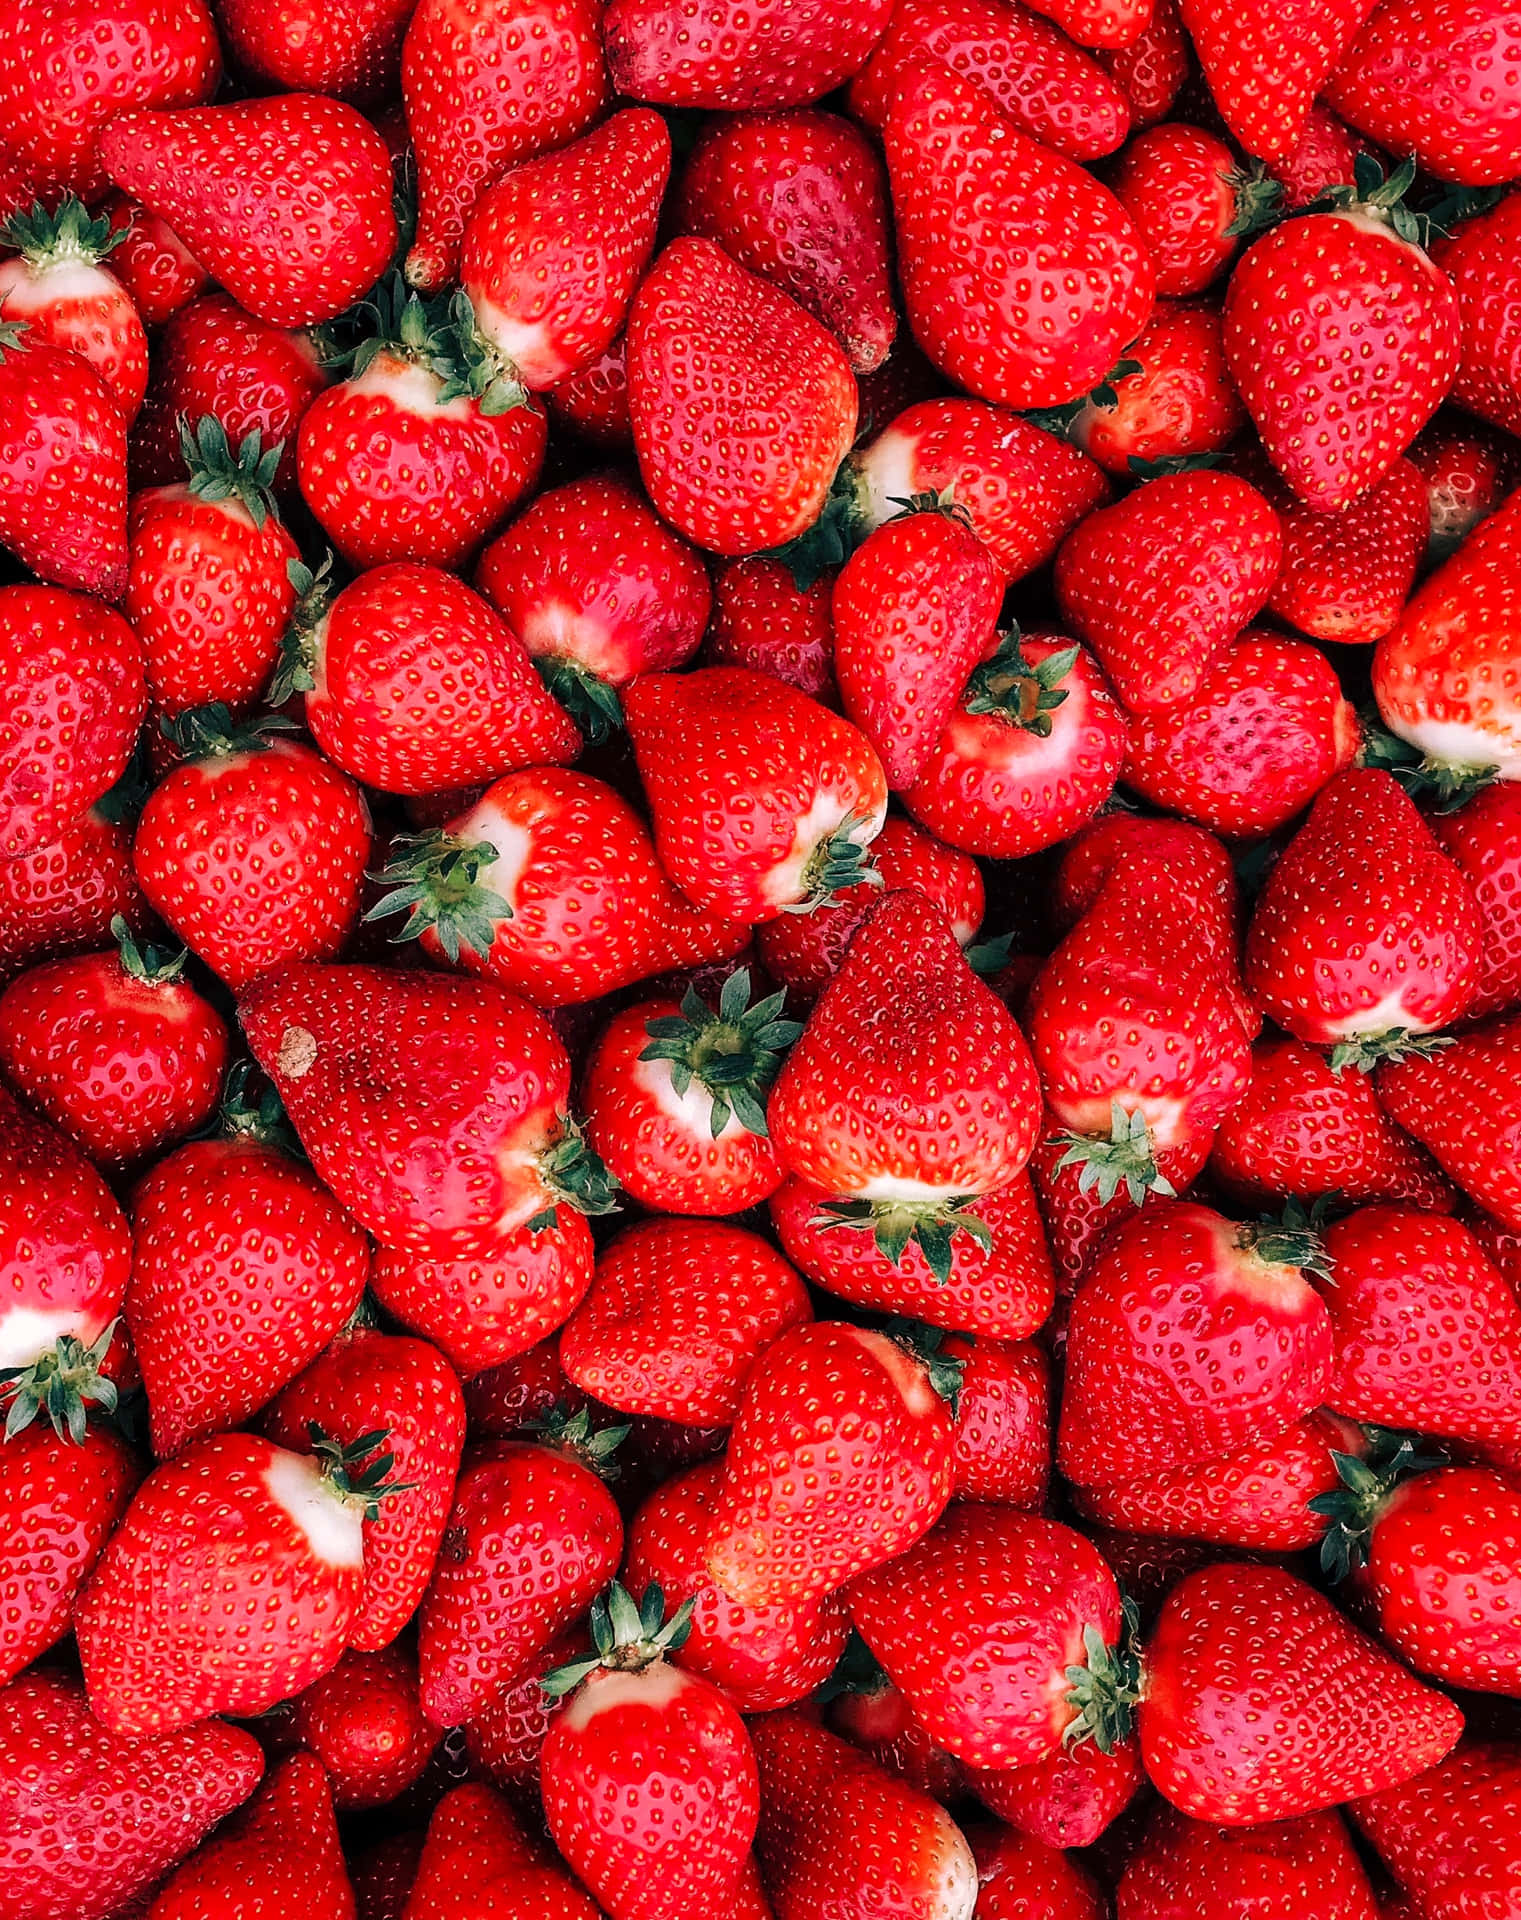 Sweet and Juicy Strawberries